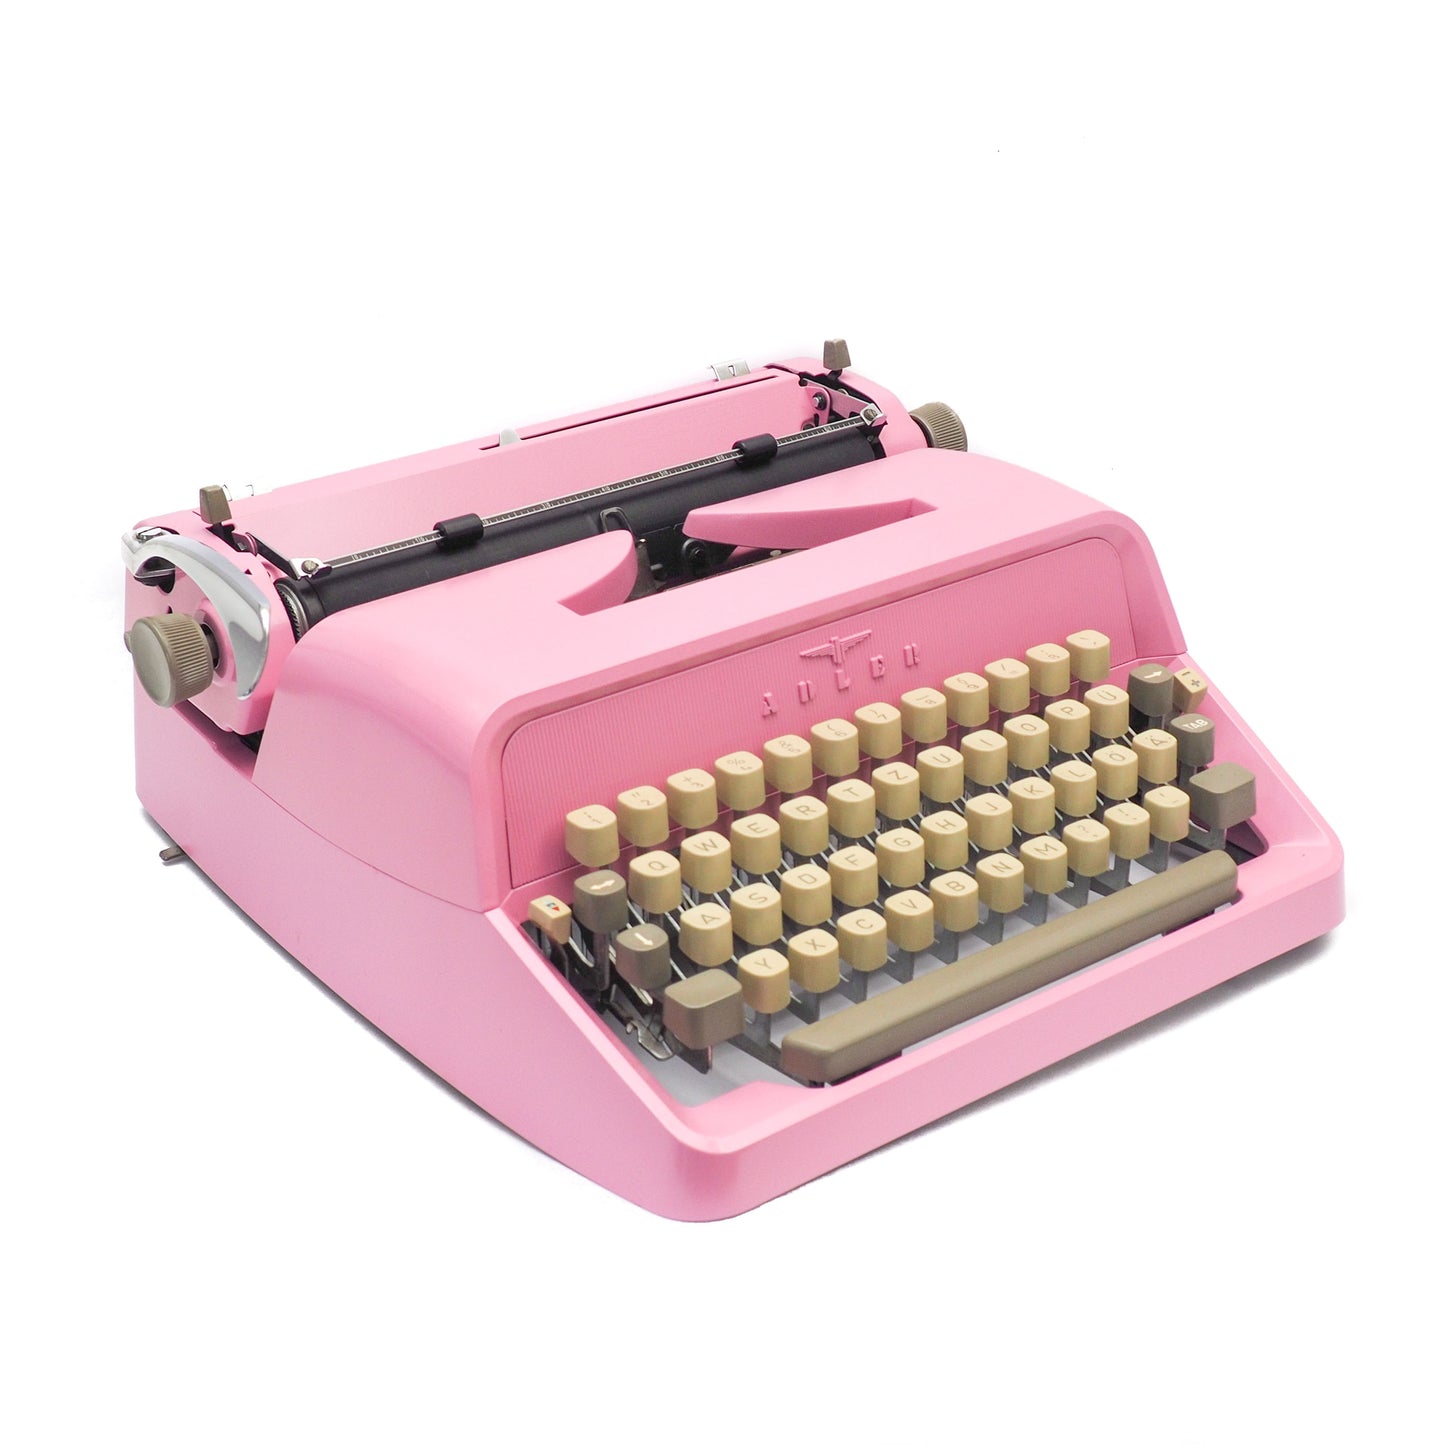 Typewriter Adler Junior 20, Blush Pink